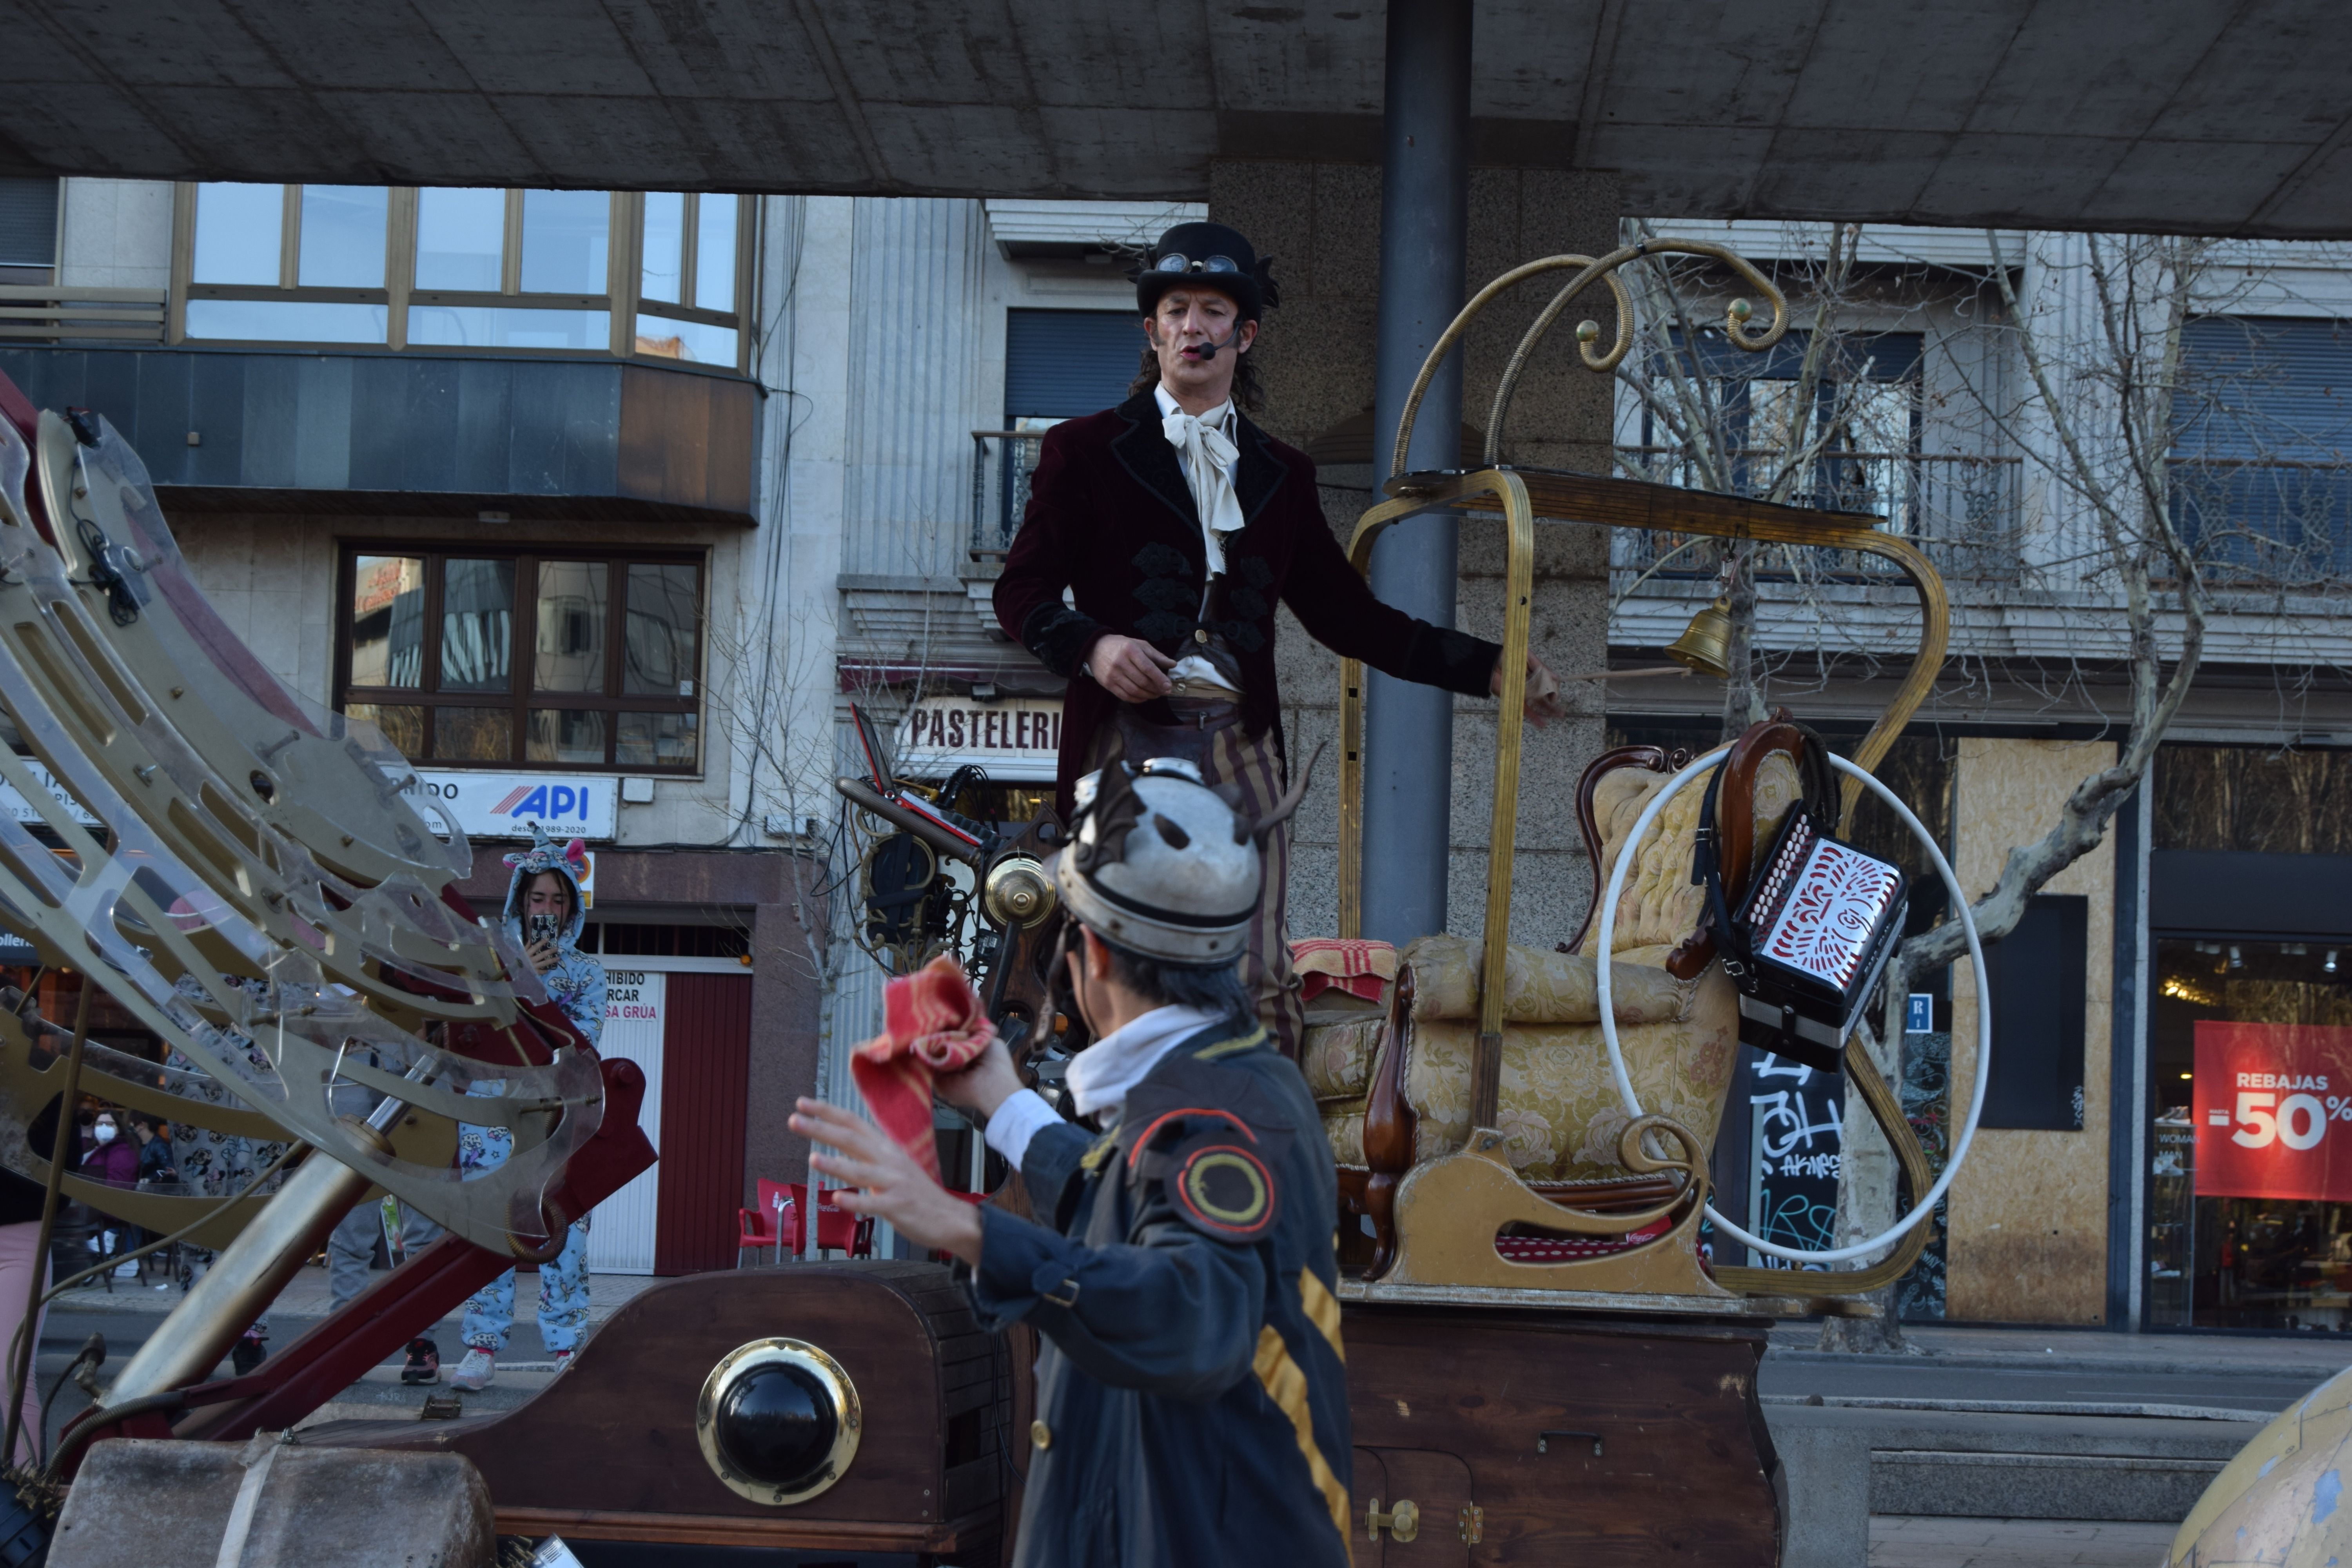 El pasacalles 'Ulterior, el viaje' llega a Zamora para animar el Carnaval